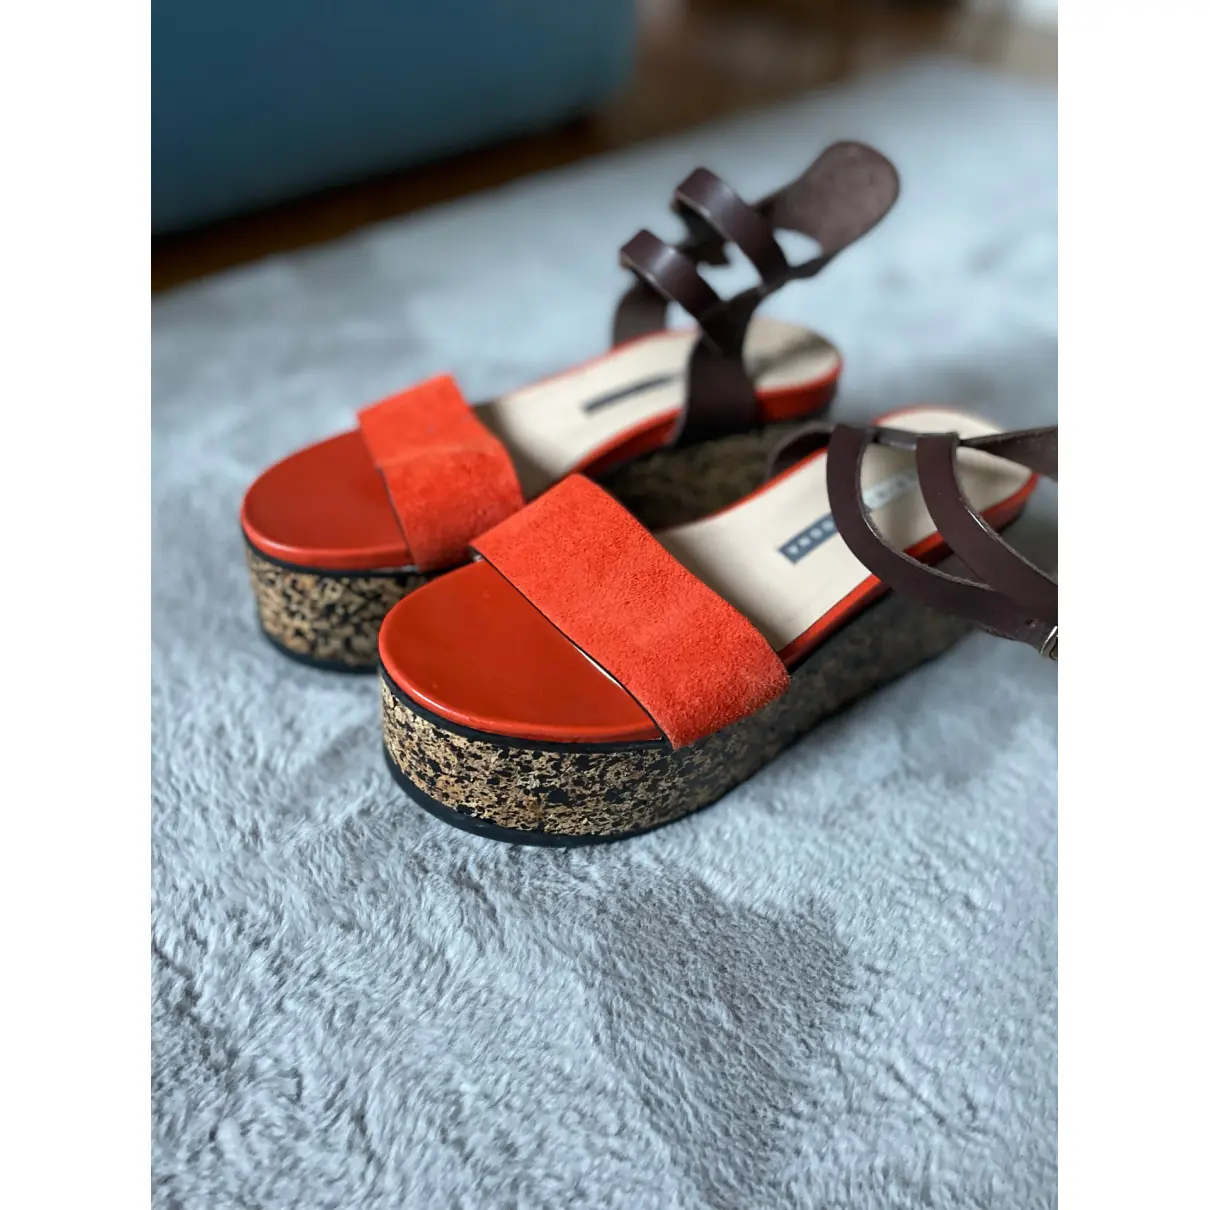 Luxury Chiarini Bologna Sandals Women